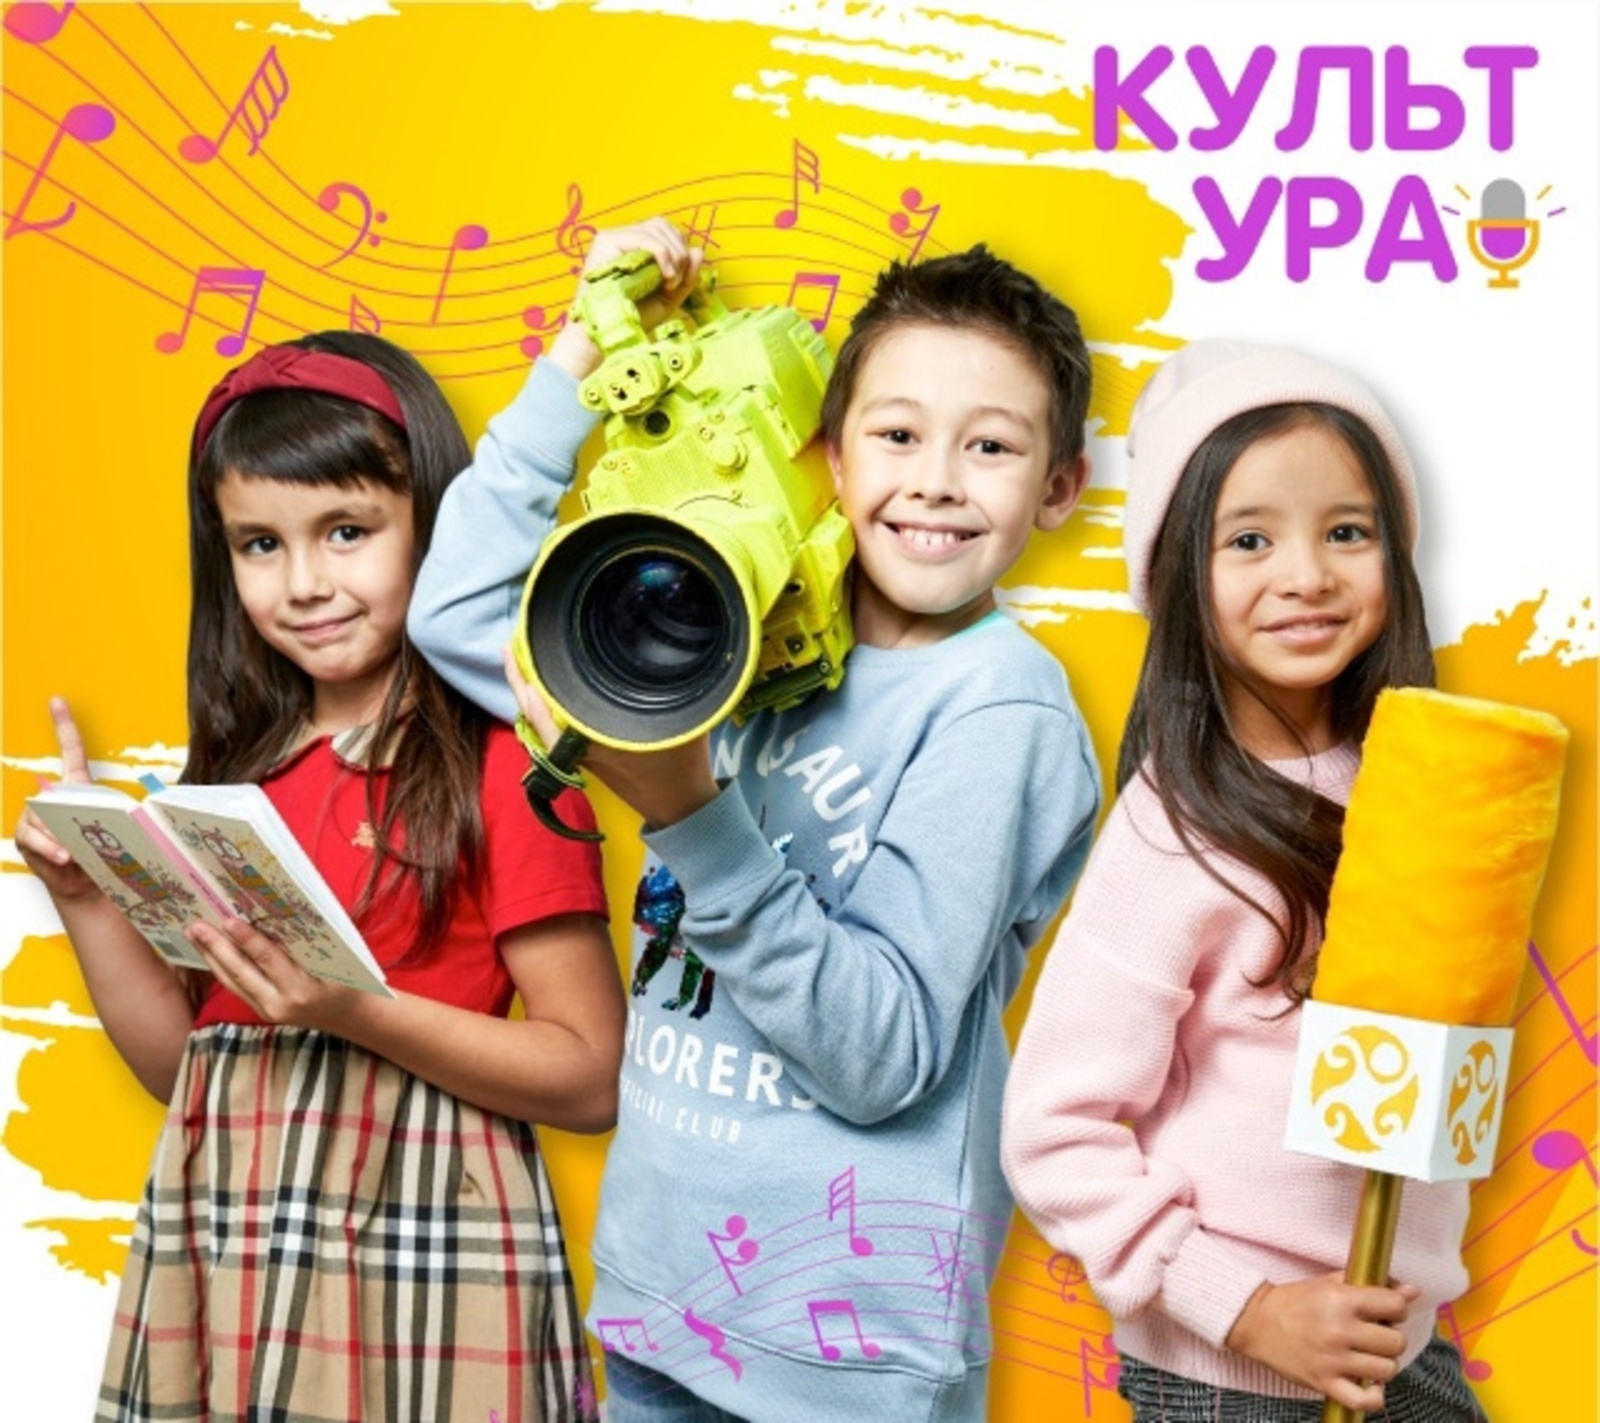 Контент фестиваля "КультУРА" обещает позитивным